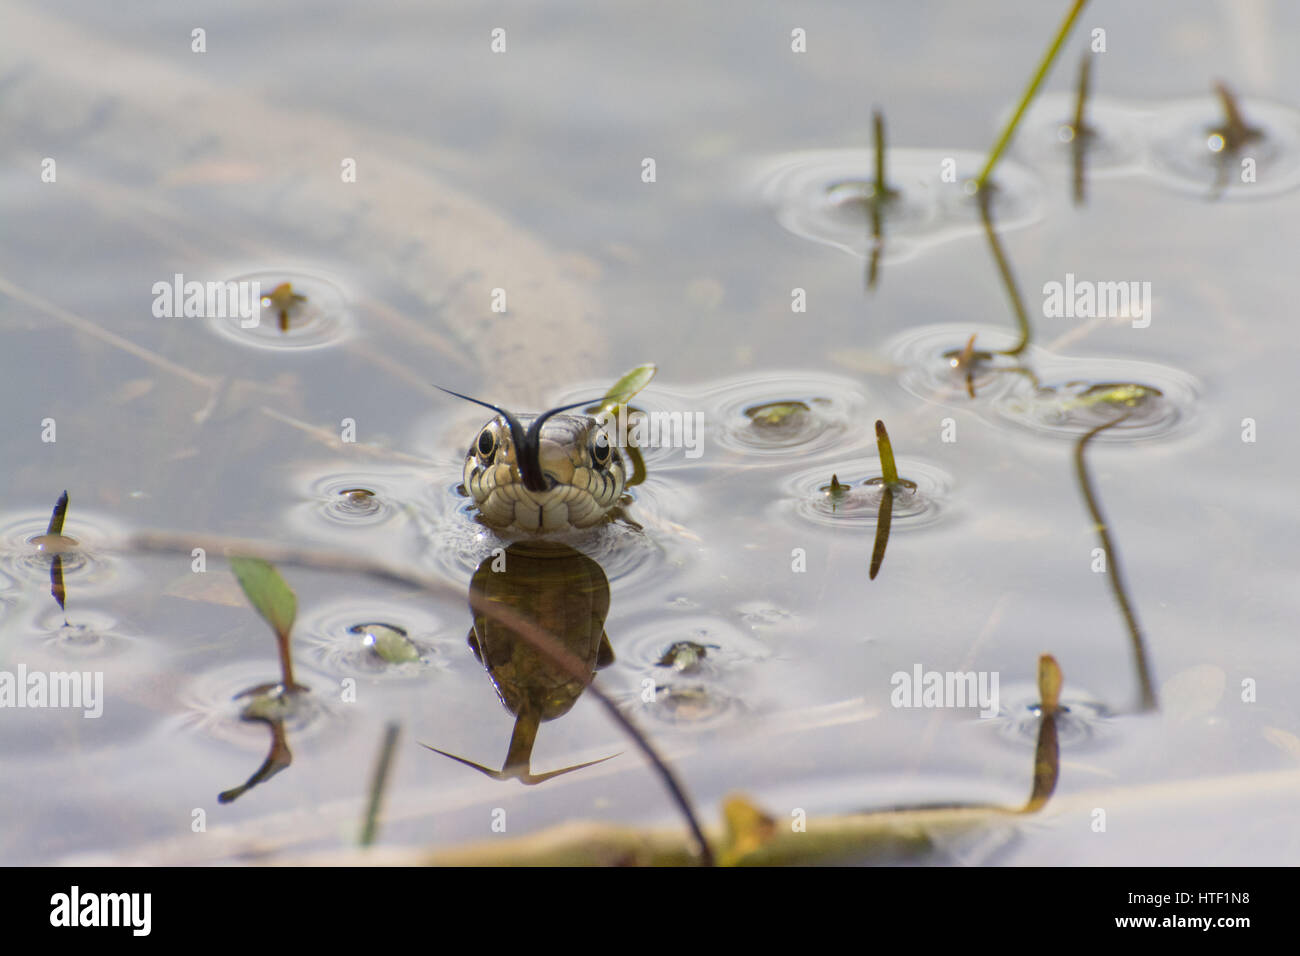 Gros plan d'un serpent à herbe (Natrix helvetica) nageant dans un étang, Royaume-Uni - vue de la tête avec flage de la langue (chemosensing) Banque D'Images